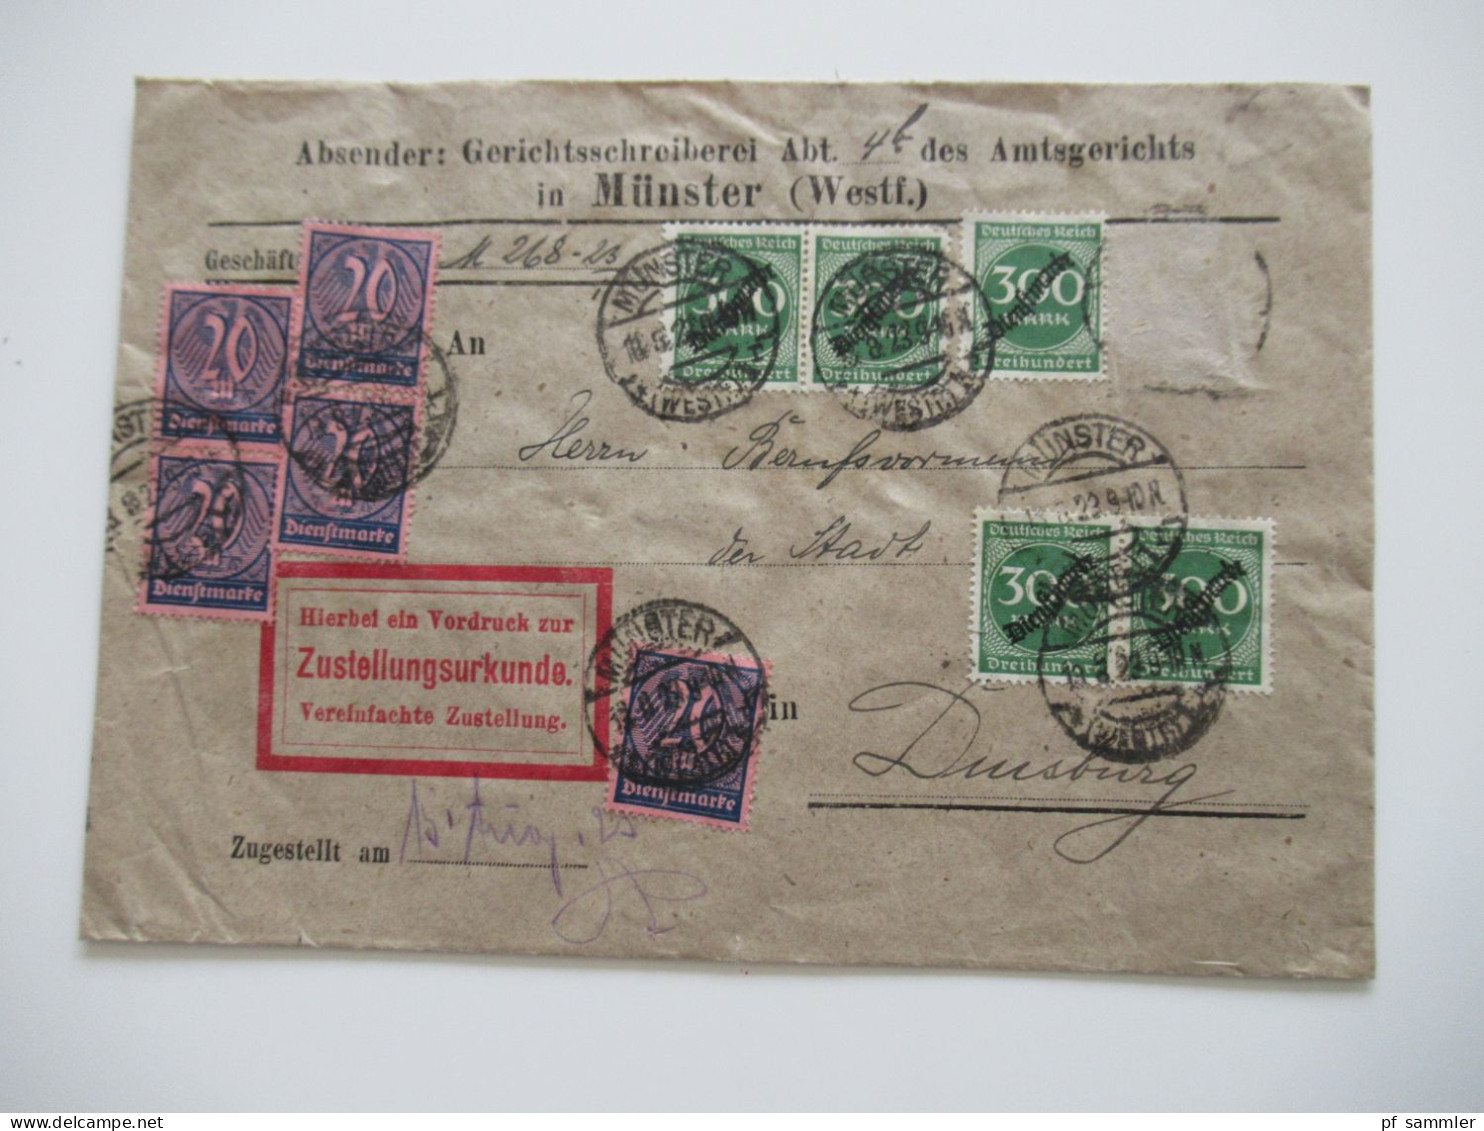 DR 1920er Jahre - 1931 Dienstbriefe / teils hohe Frankaturen / kleiner Posten mit 9 Belegen / Ruhrgebiet usw.